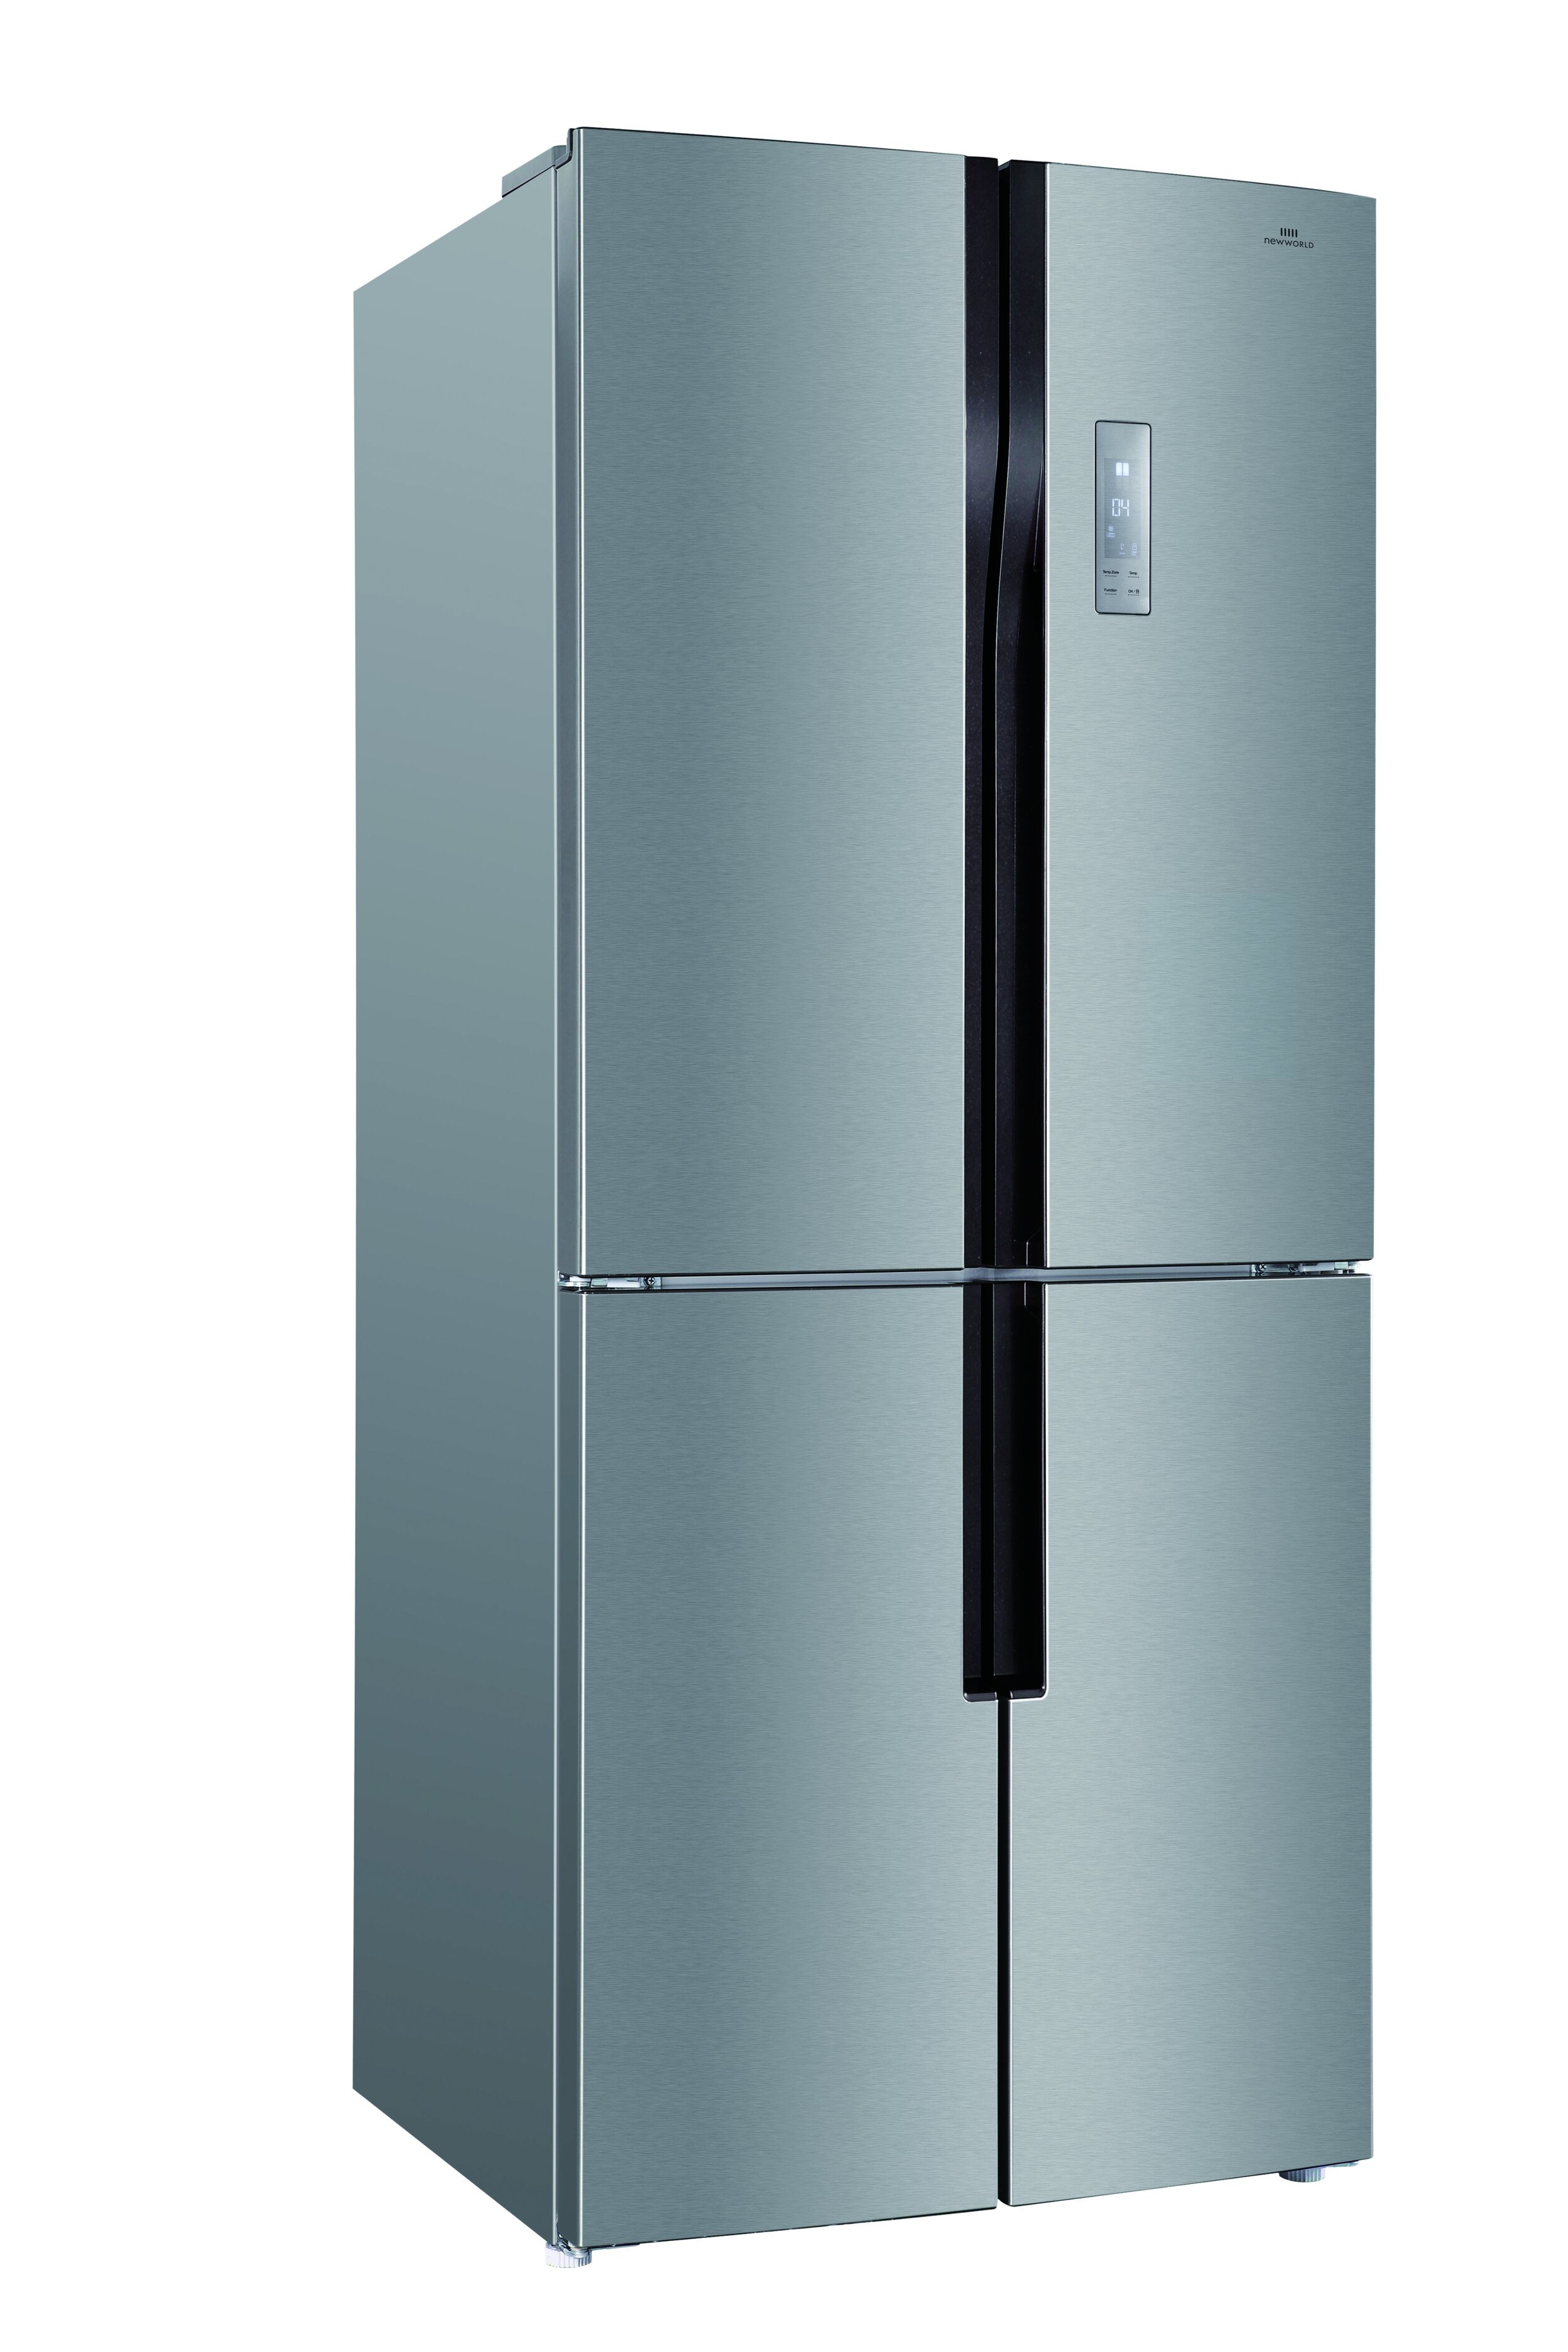 Сайт днс холодильники. Холодильник Hisense RQ-515n4ad1. Холодильник Hansa FY418.3DFXC. Холодильник Hansa FY418.3DFXC Silver/Grey. Холодильник Hisense rq515n4ad1 Silver.